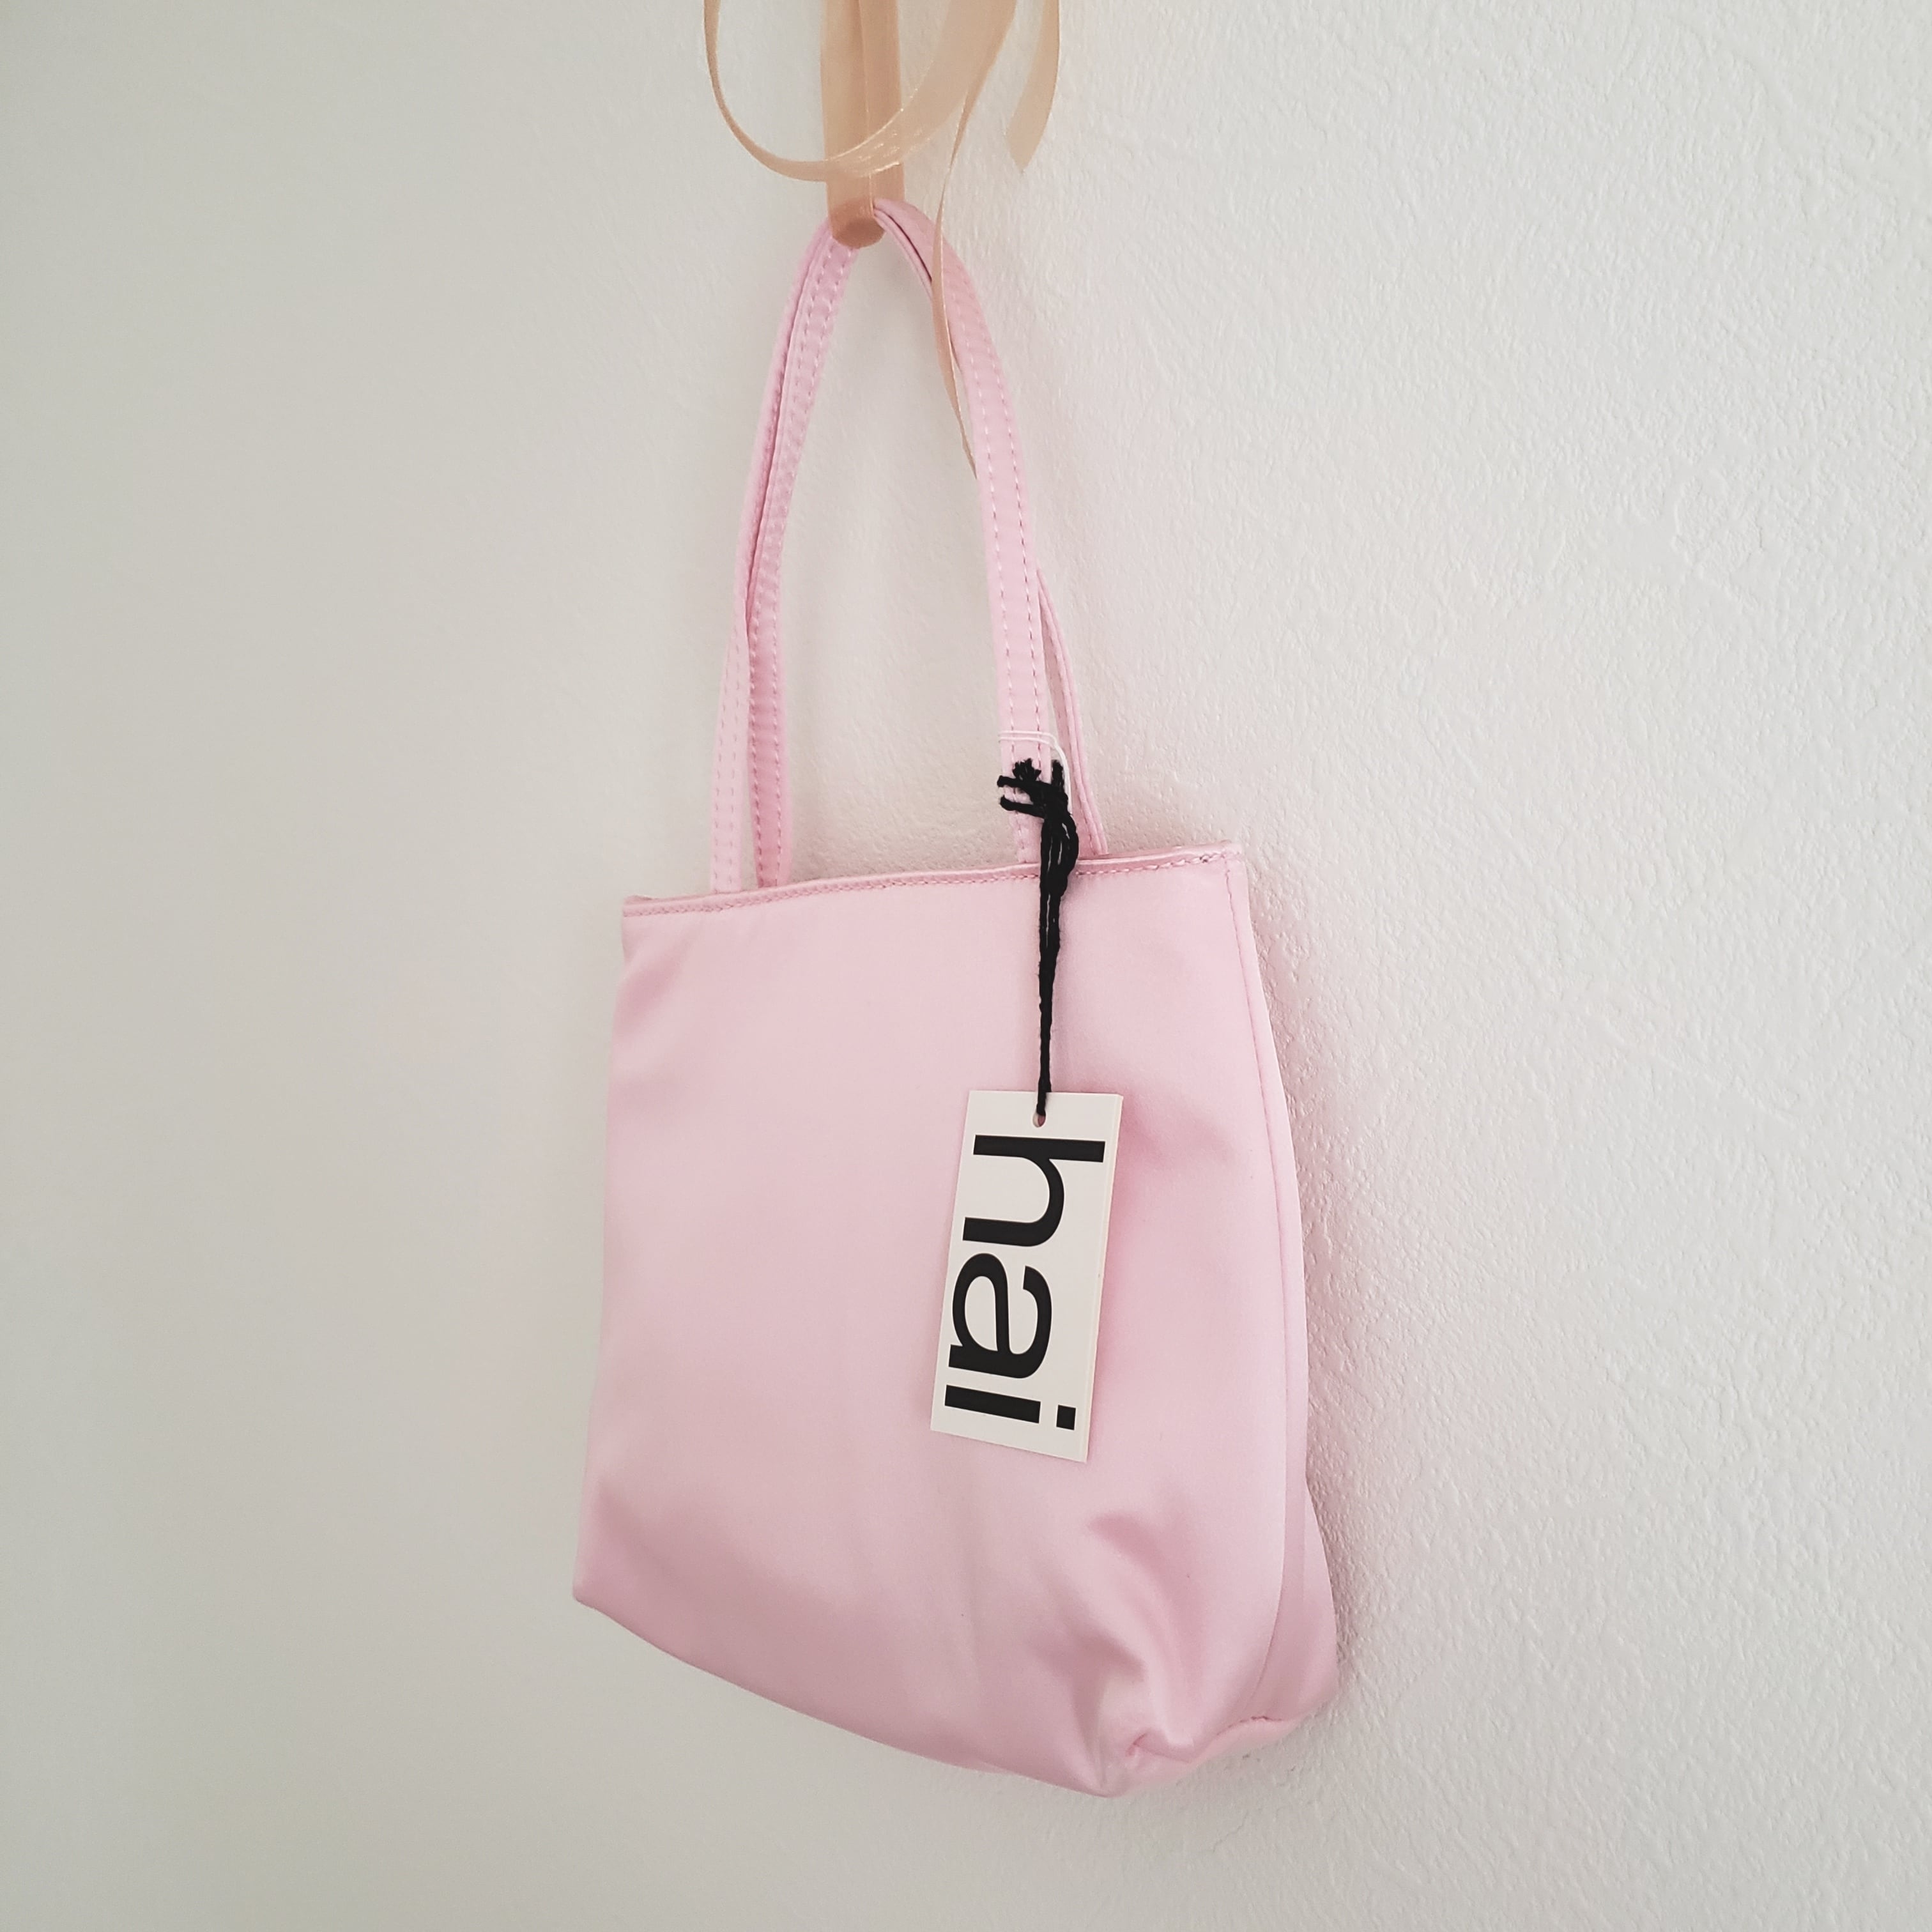 送料無料*【hai (ハイ)】新色入荷: Little Pink Bag / インポート ...